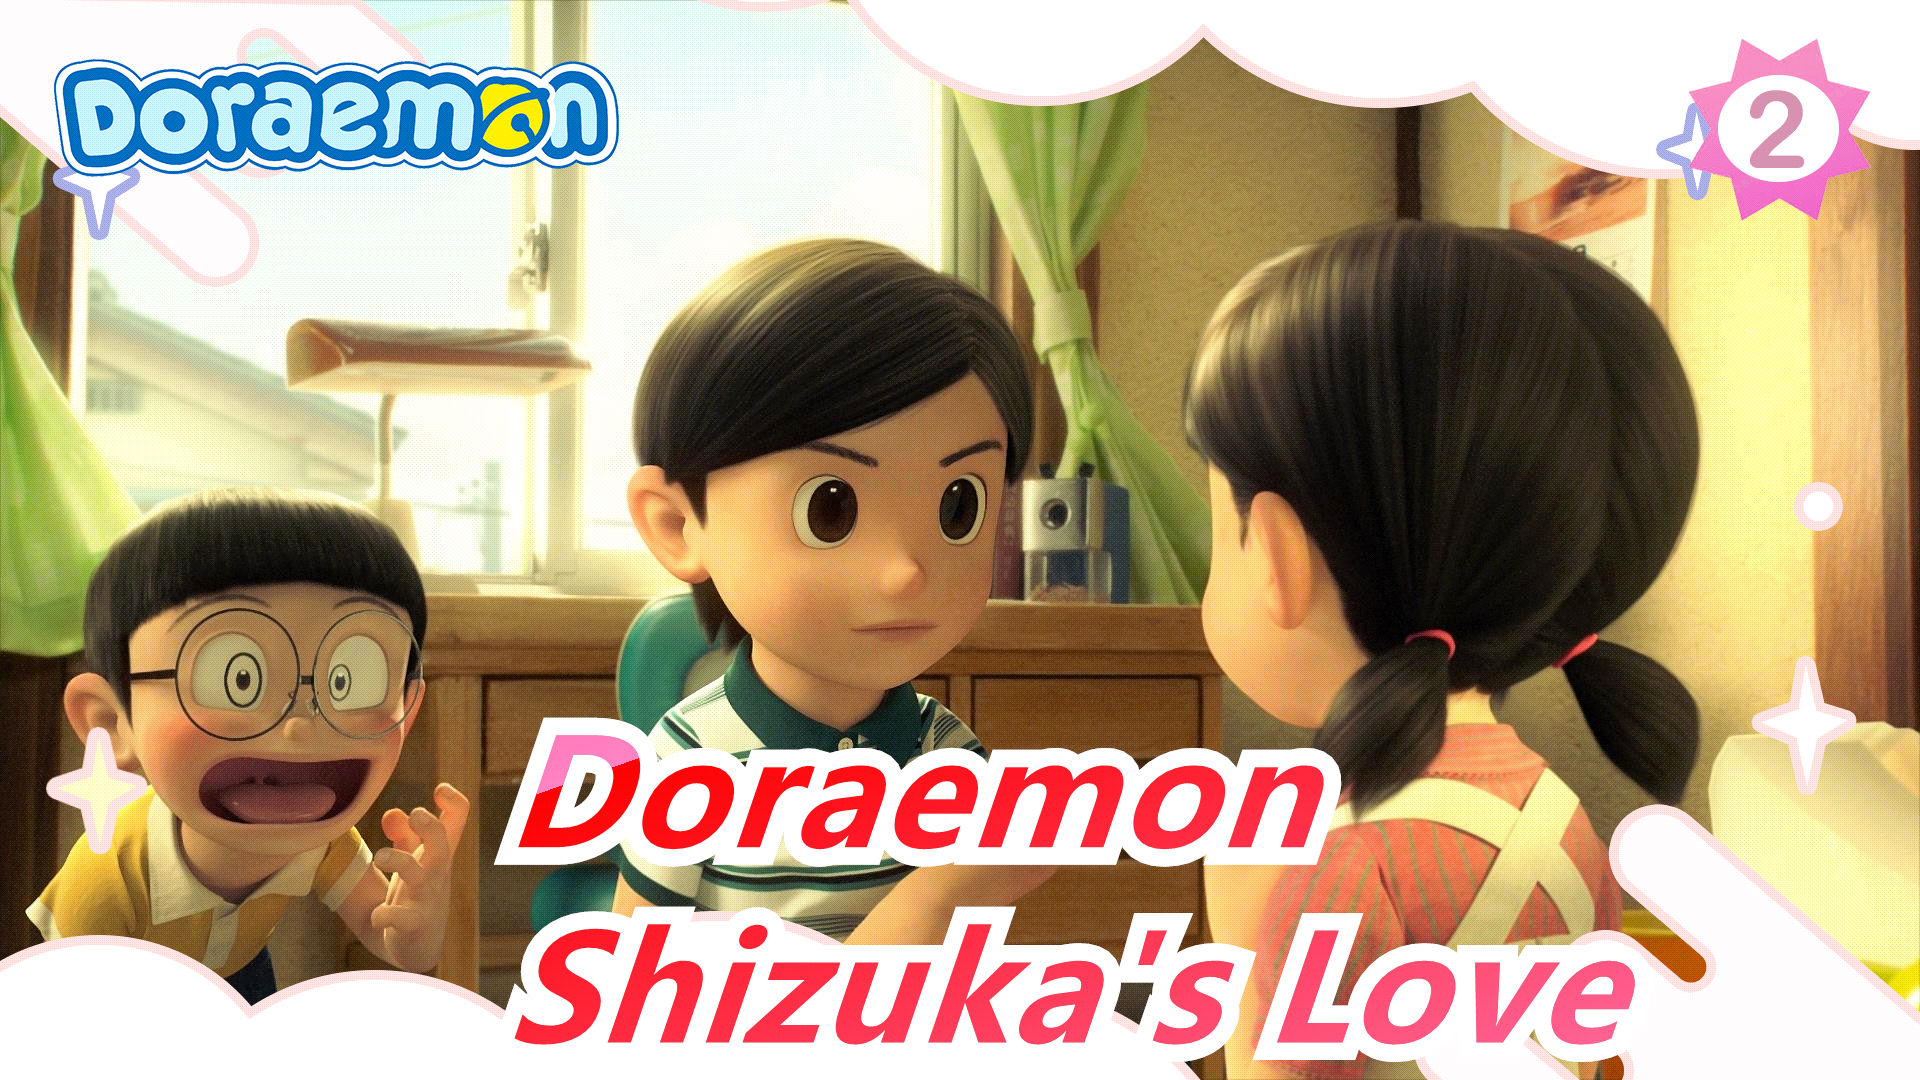 Doraemon] Shizuka's Love, It's So Sad_A2 - Bilibili